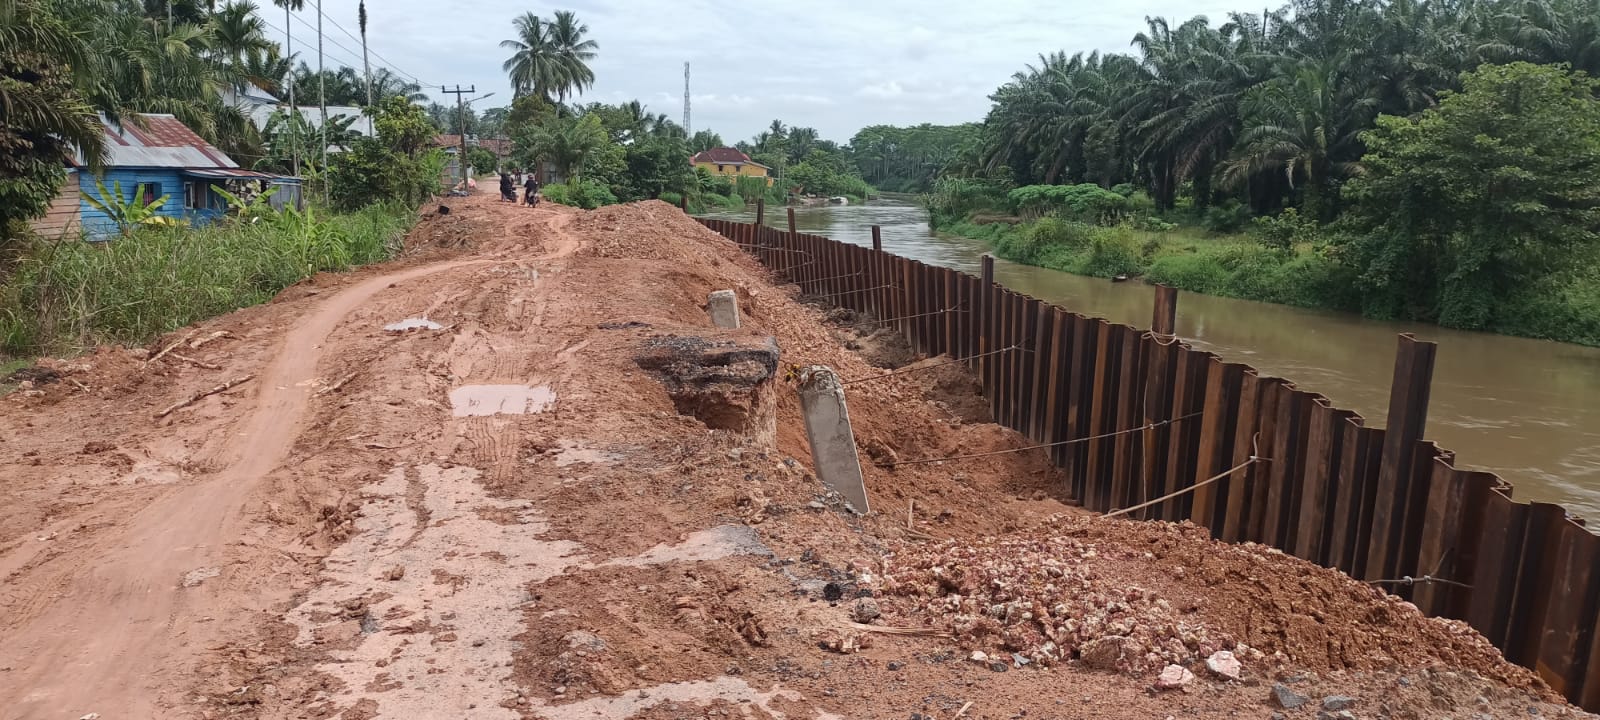 Warga Keluhkan Lambannya Pembangunan Tembok Penahan Tanah di Desa Muara Baru